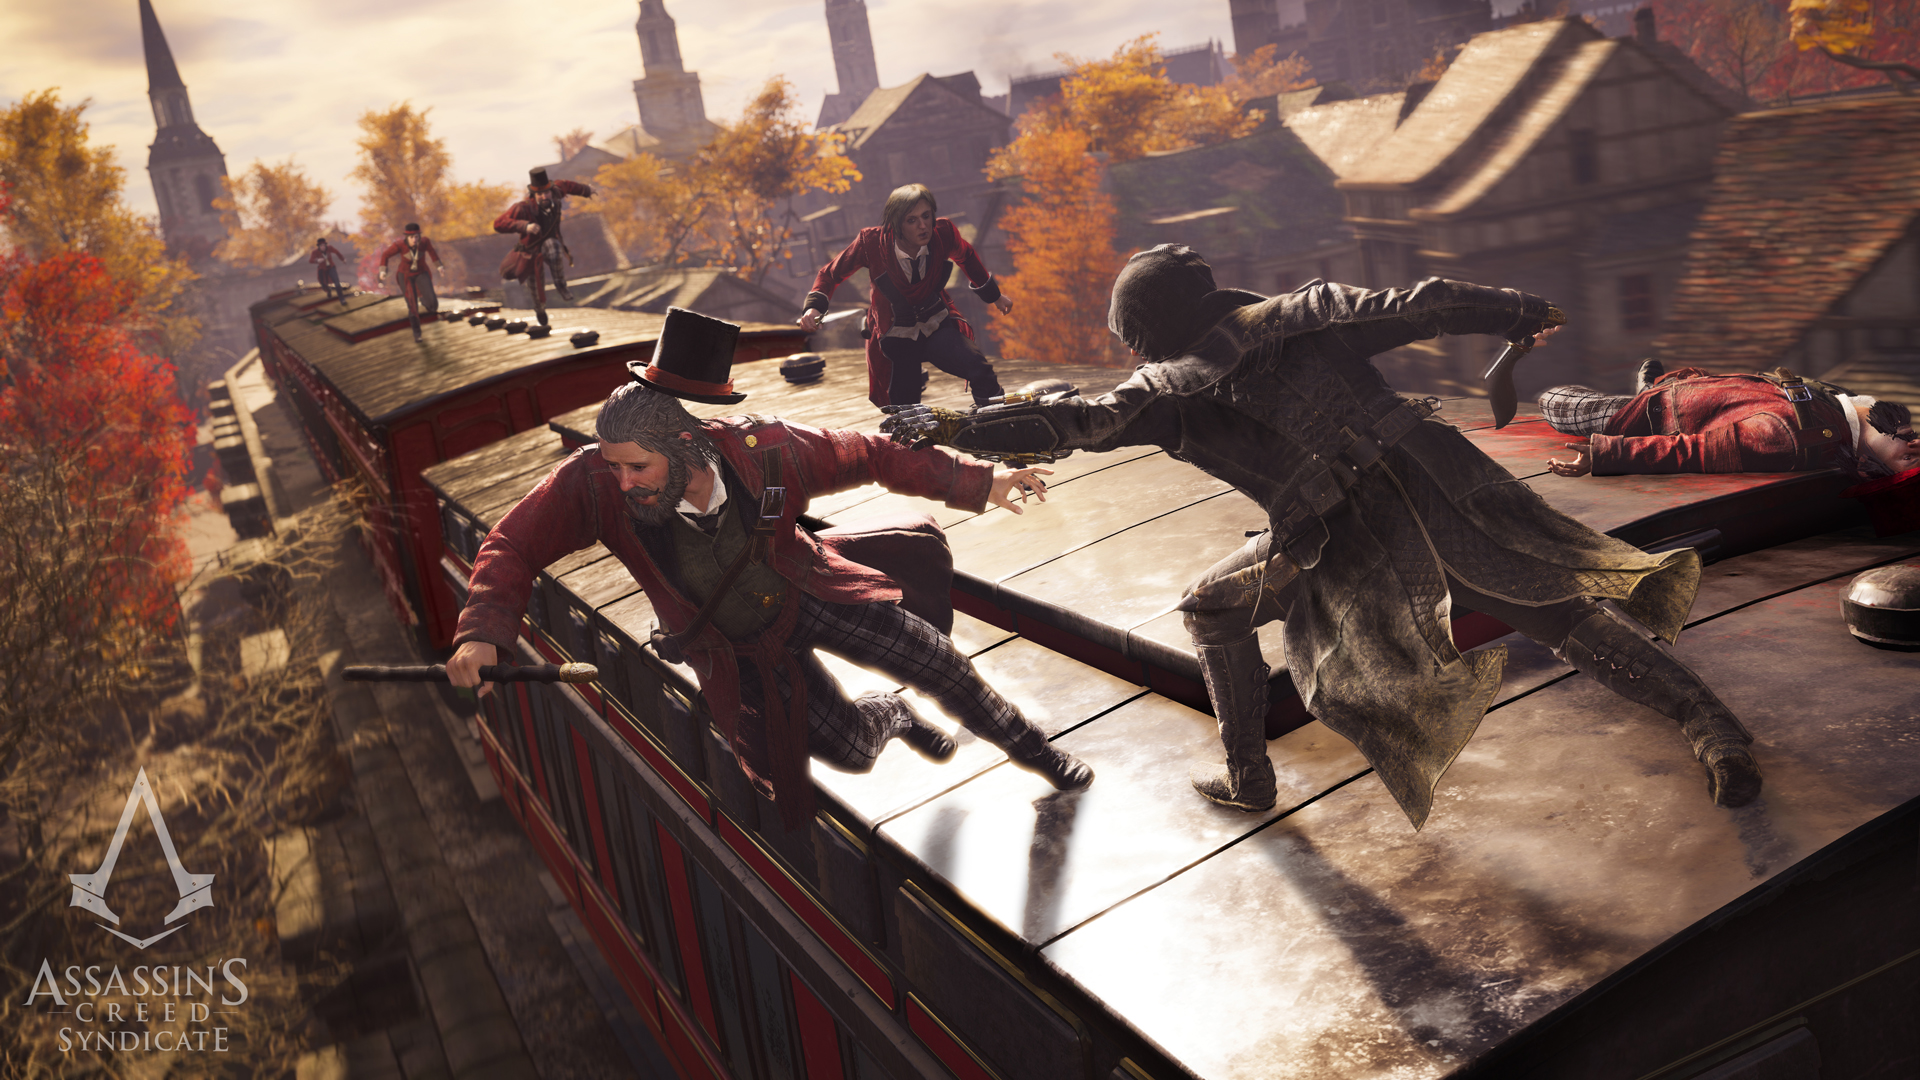 Immagine pubblicata in relazione al seguente contenuto: Ubisoft pubblica un nuovo trailer e screenshot di Assassin's Creed Syndicate | Nome immagine: news23123_Assassin-s-Creed-Syndicate_6.jpg